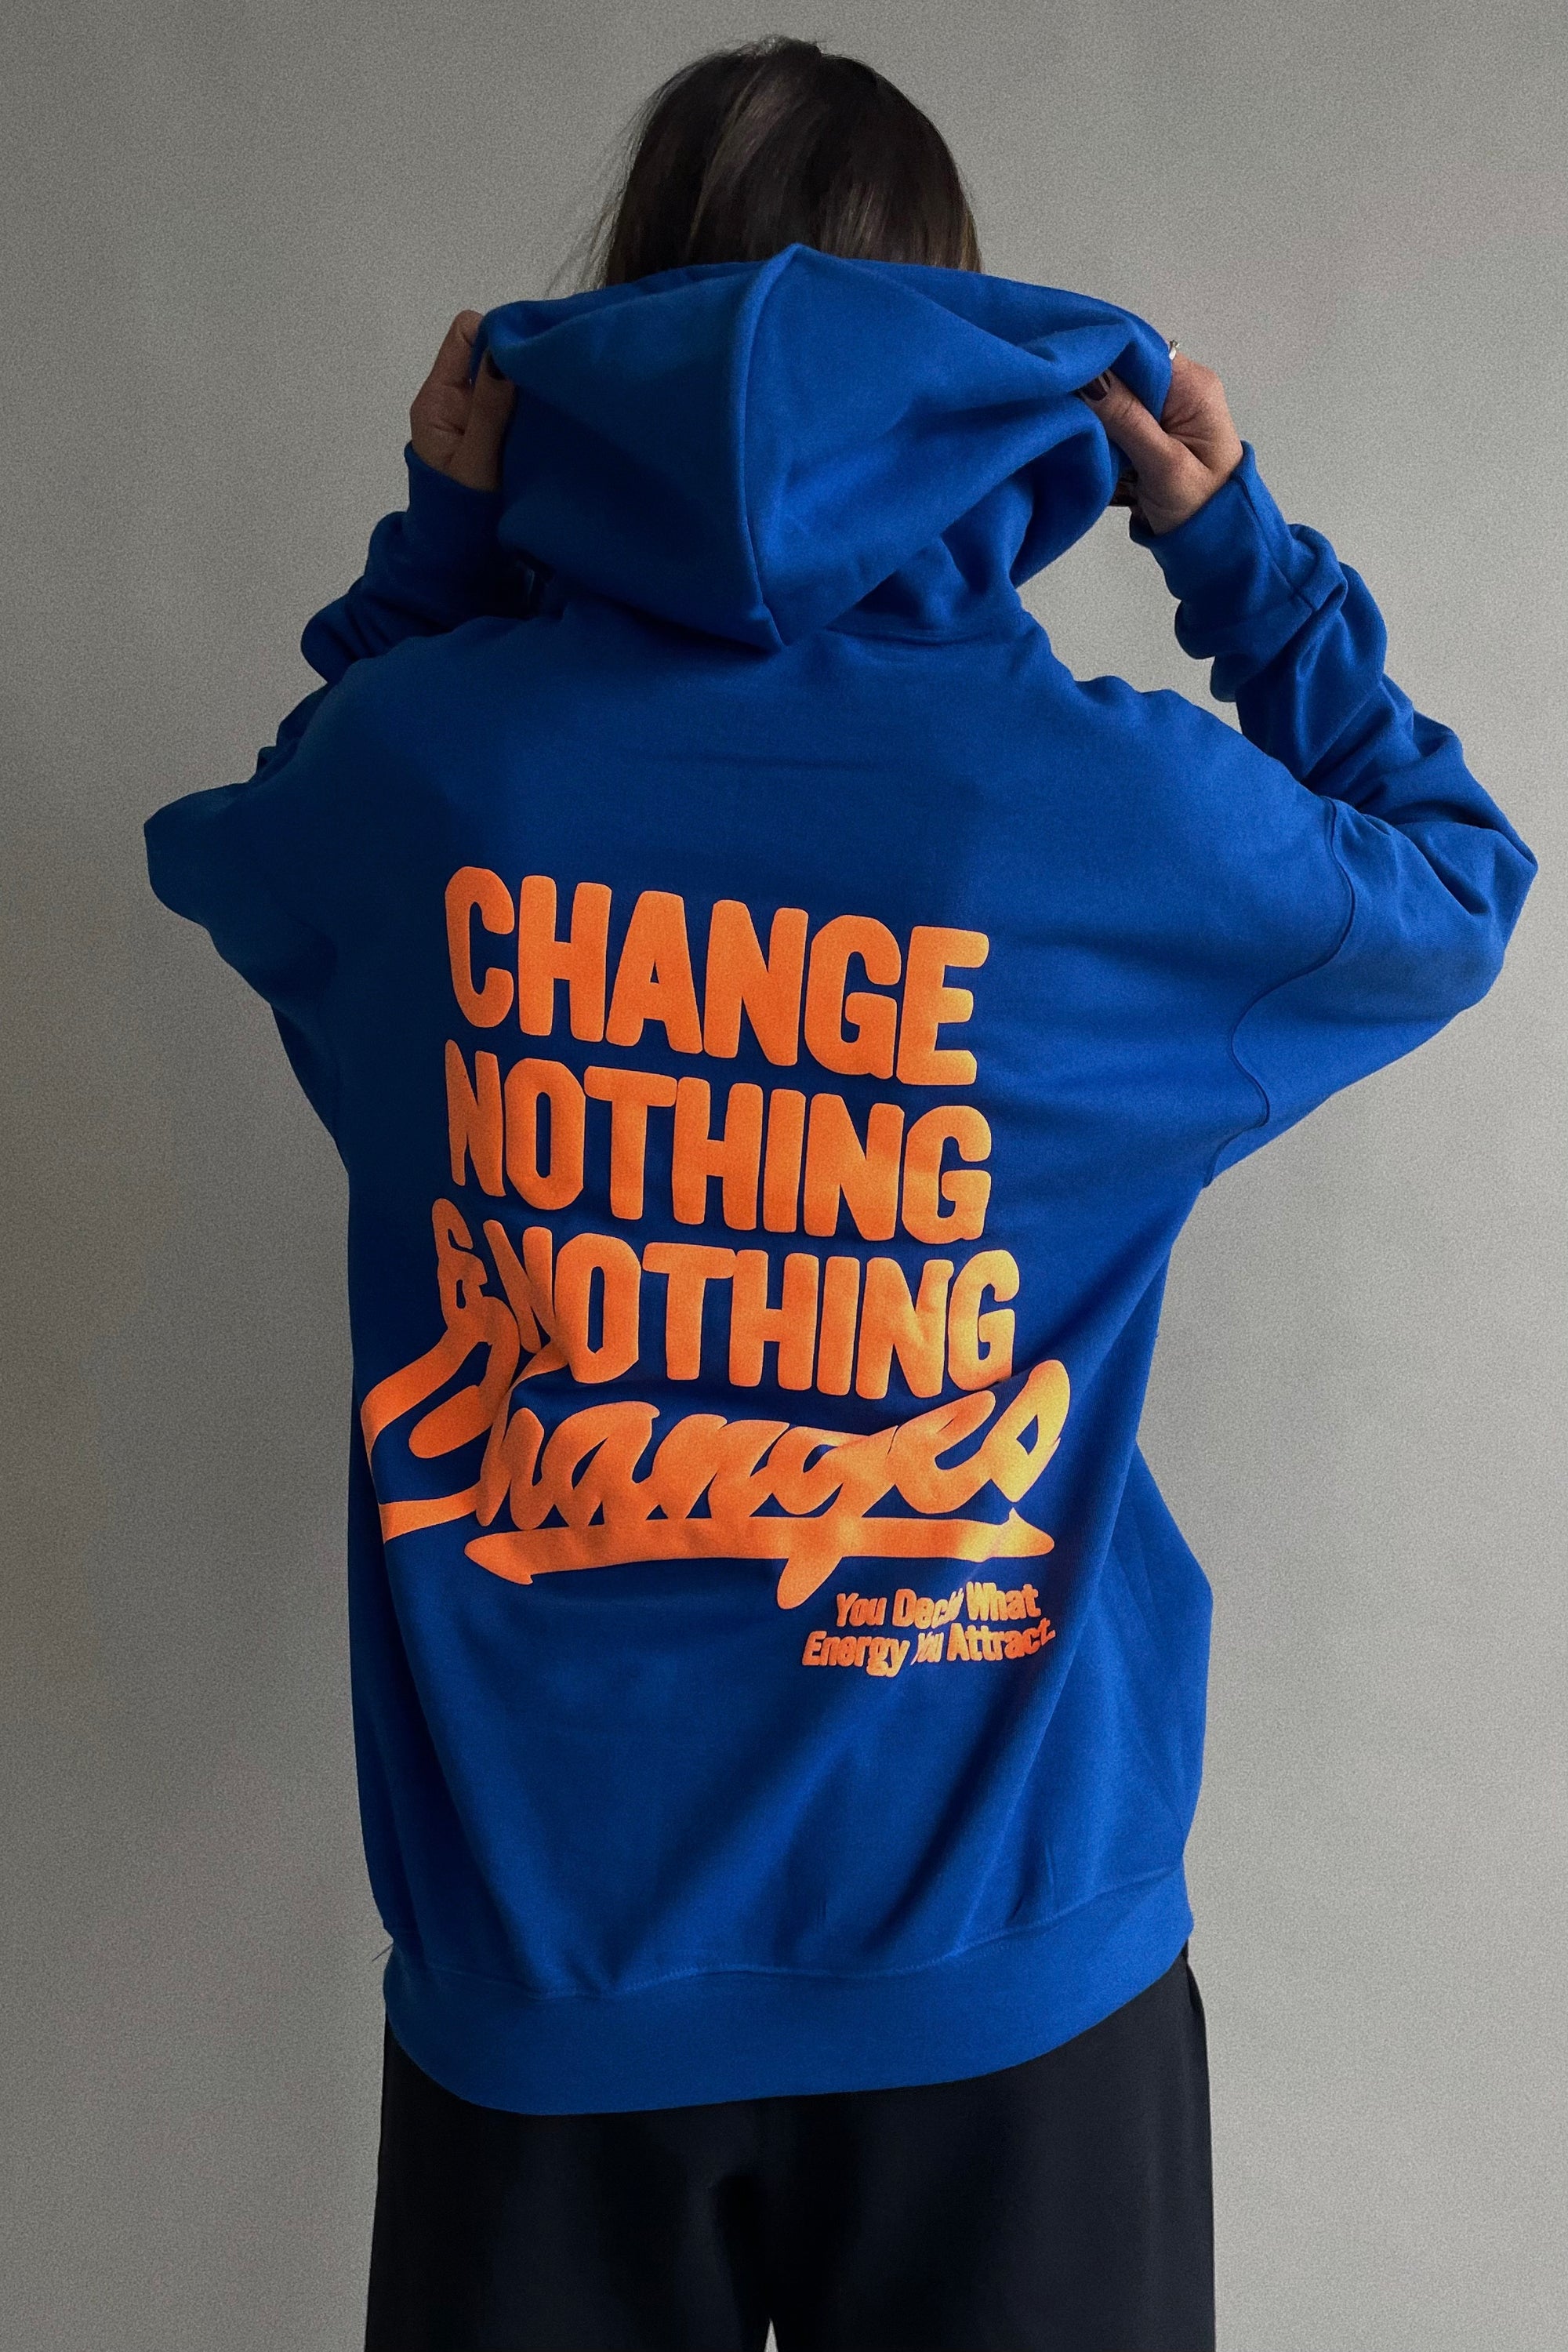 Change Sweatshirt